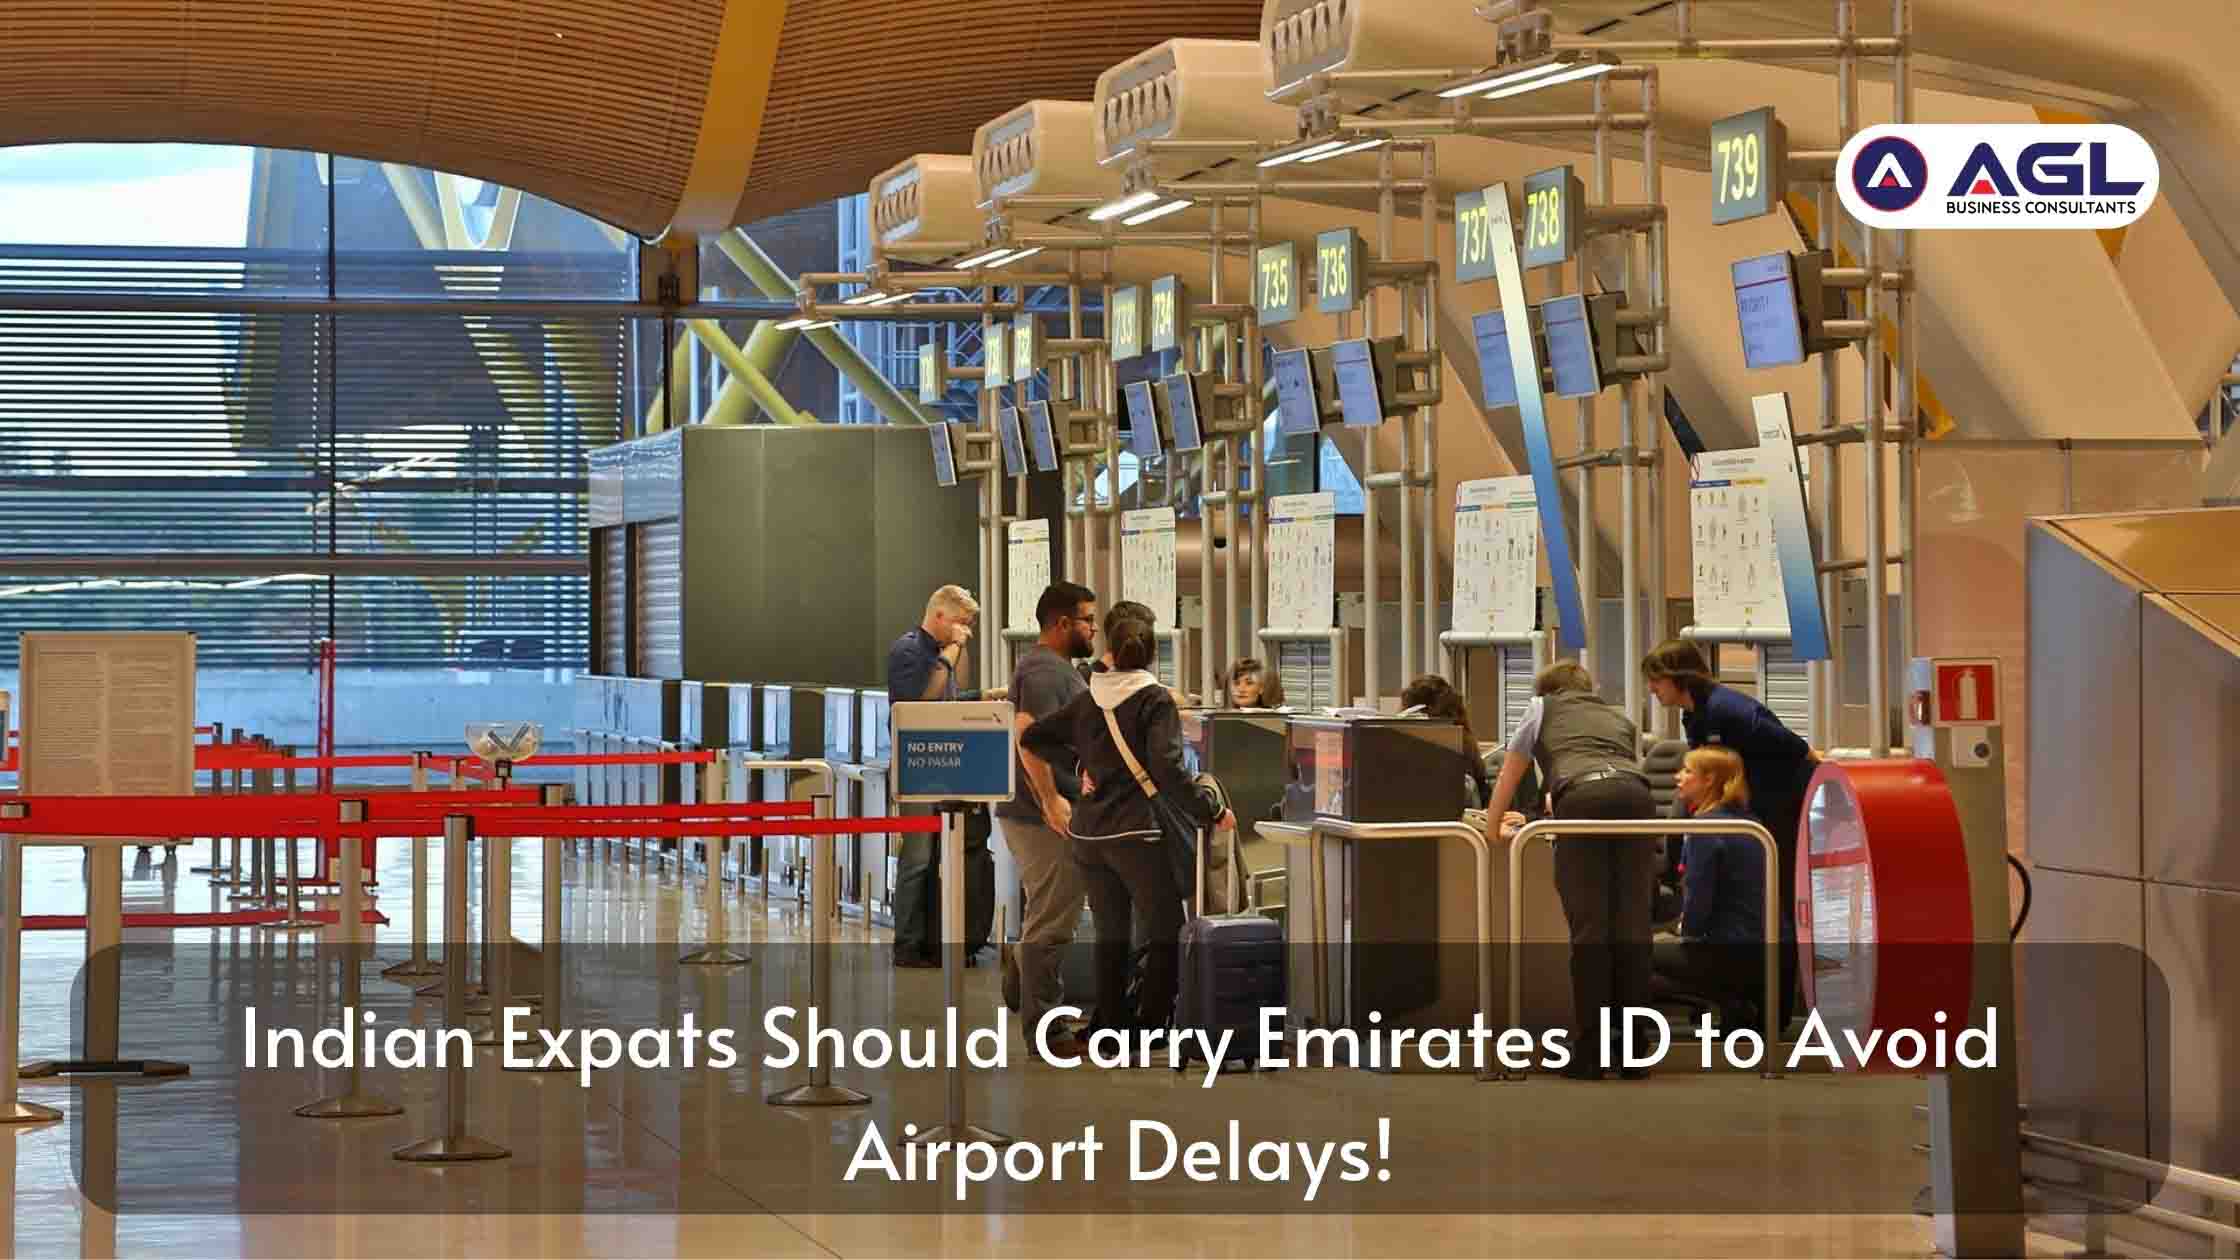 印度外籍人士应携带阿联酋身份证以避免机场延误！